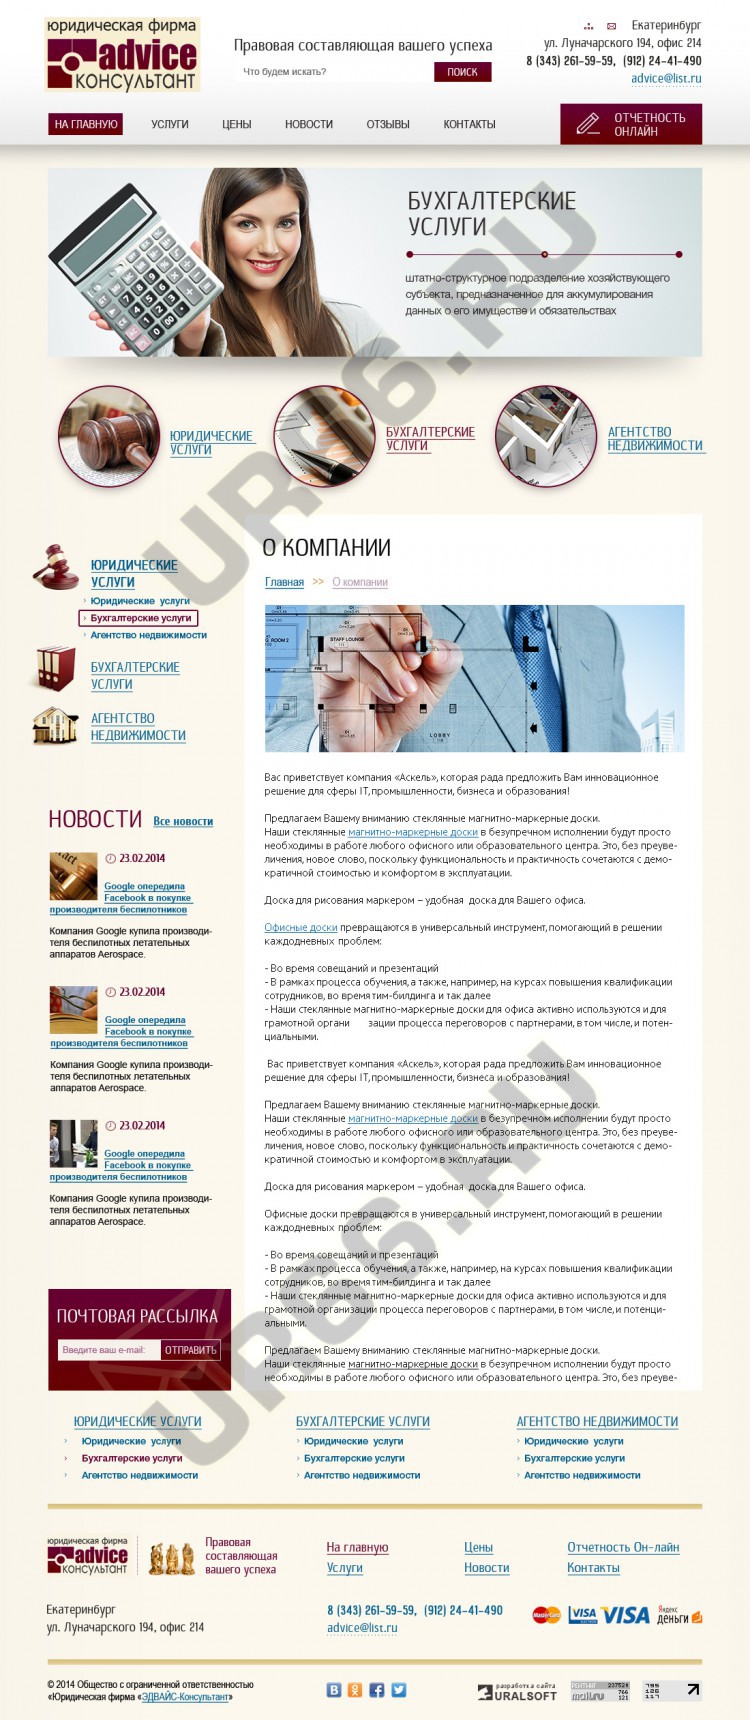    -, advice96.ru, 2014  - UR66.RU, 